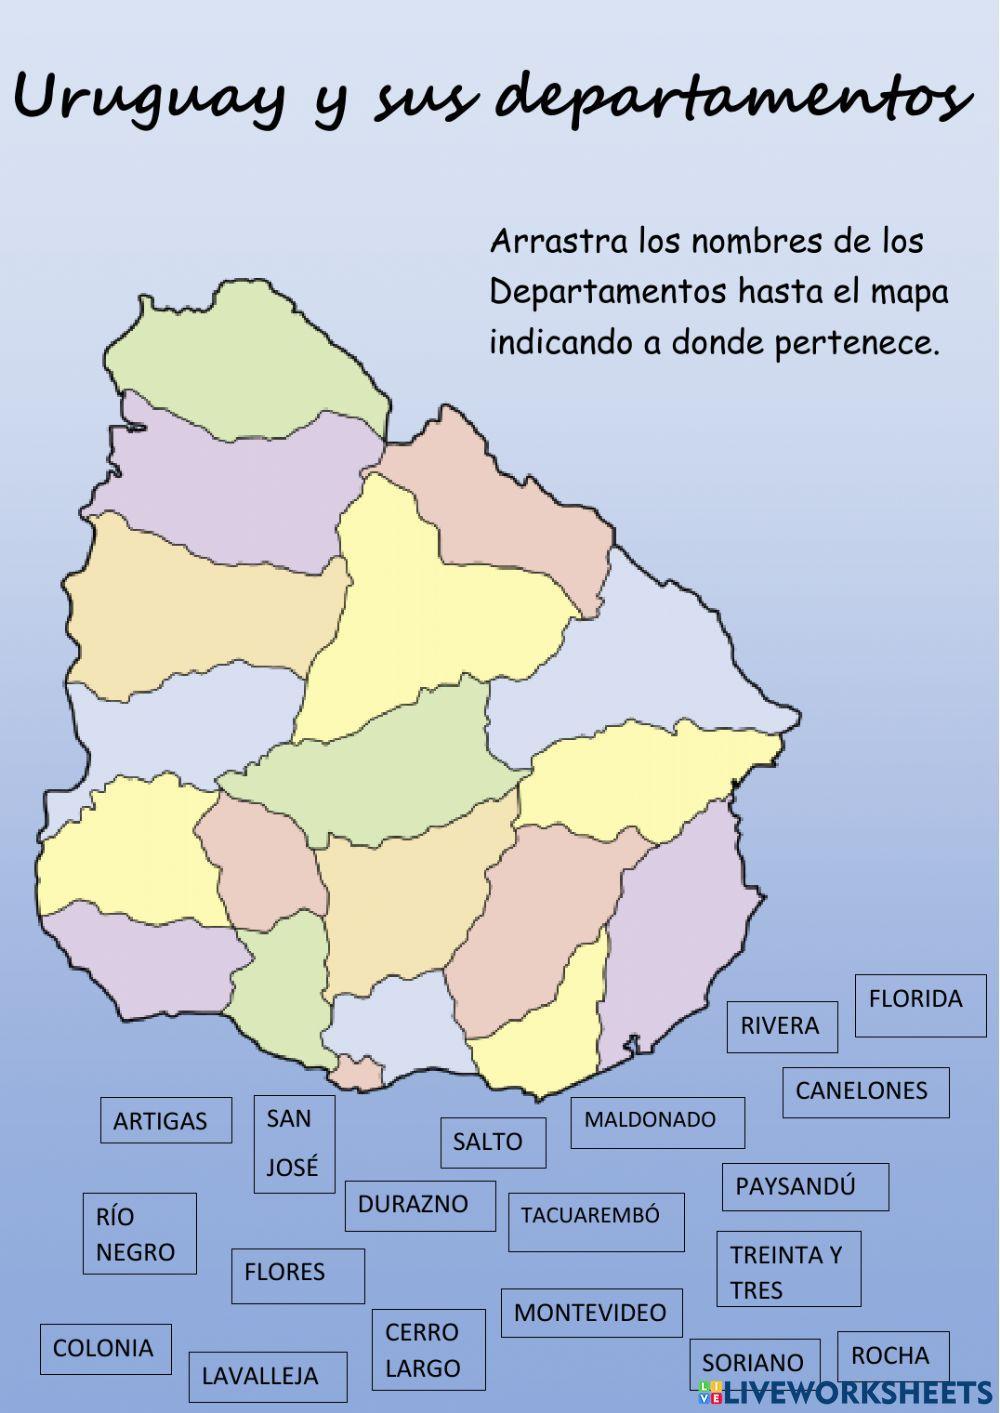 Uruguay y sus departamentos